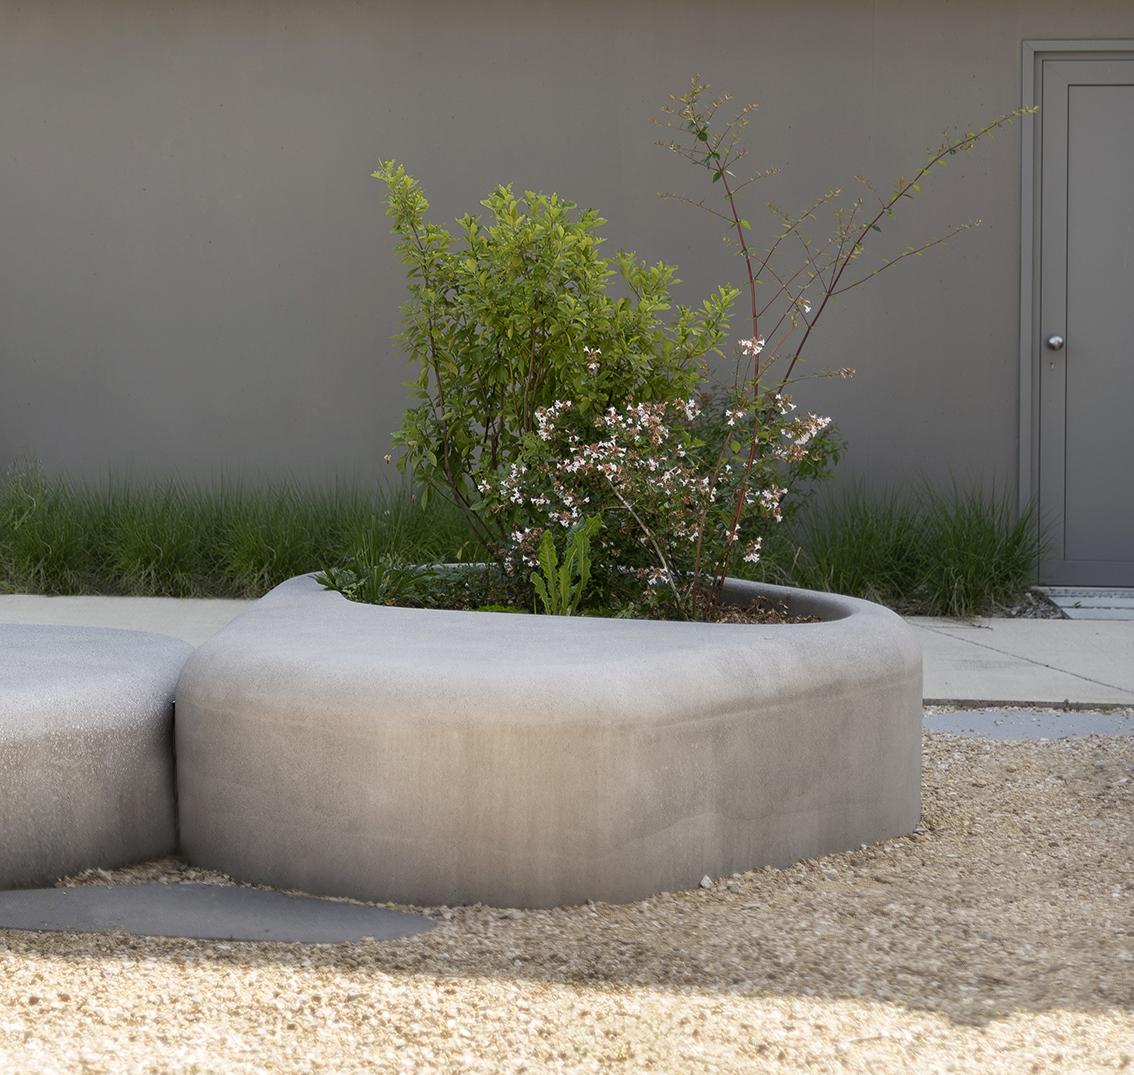 nuton concrete panter; CCHE; jardinière; bloembak; béton; beton